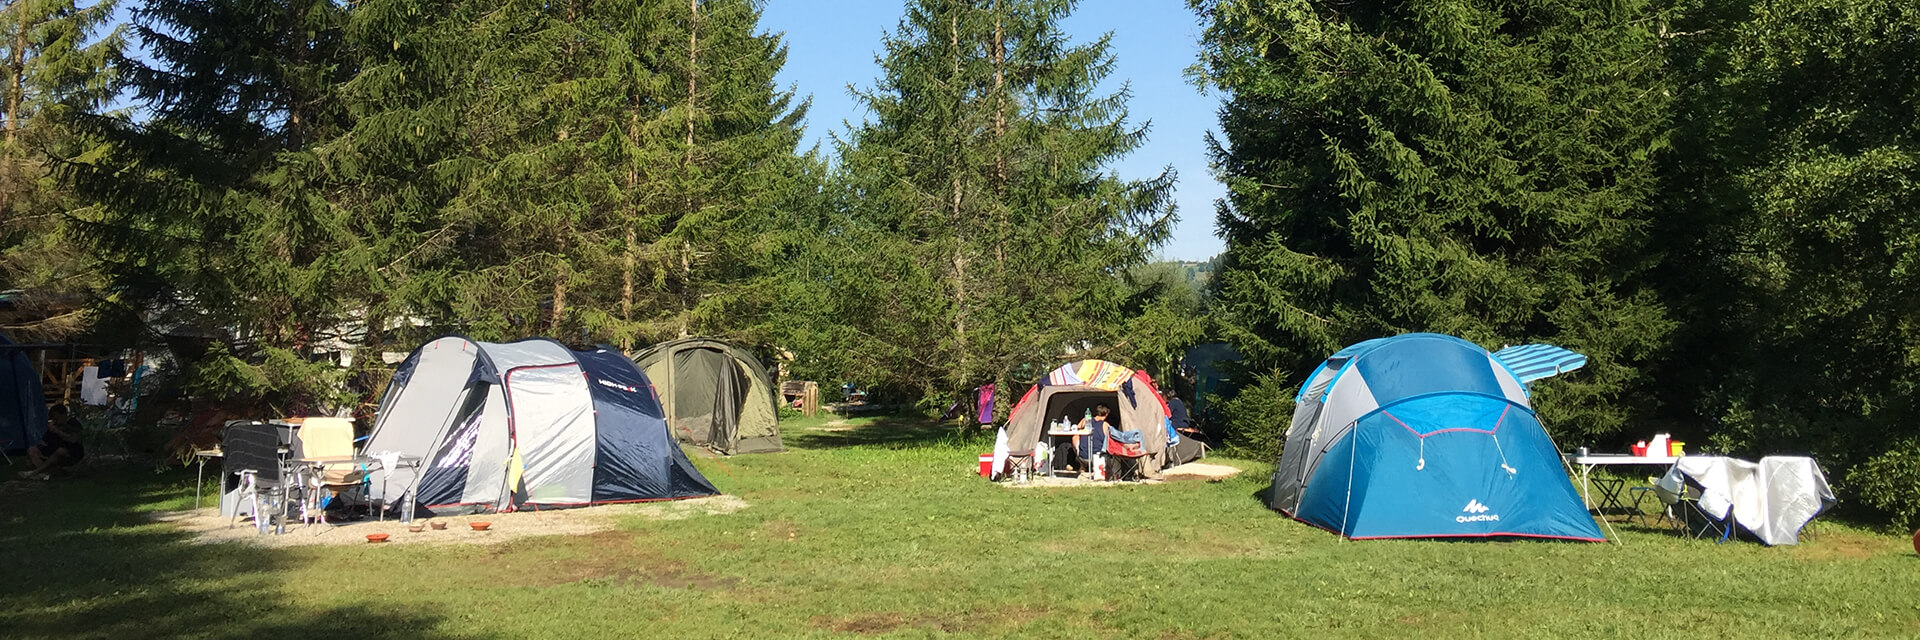 Emplacements pour tentes du camping le Mont-Grêle en Savoie, dans un cadre champêtre et verdoyant